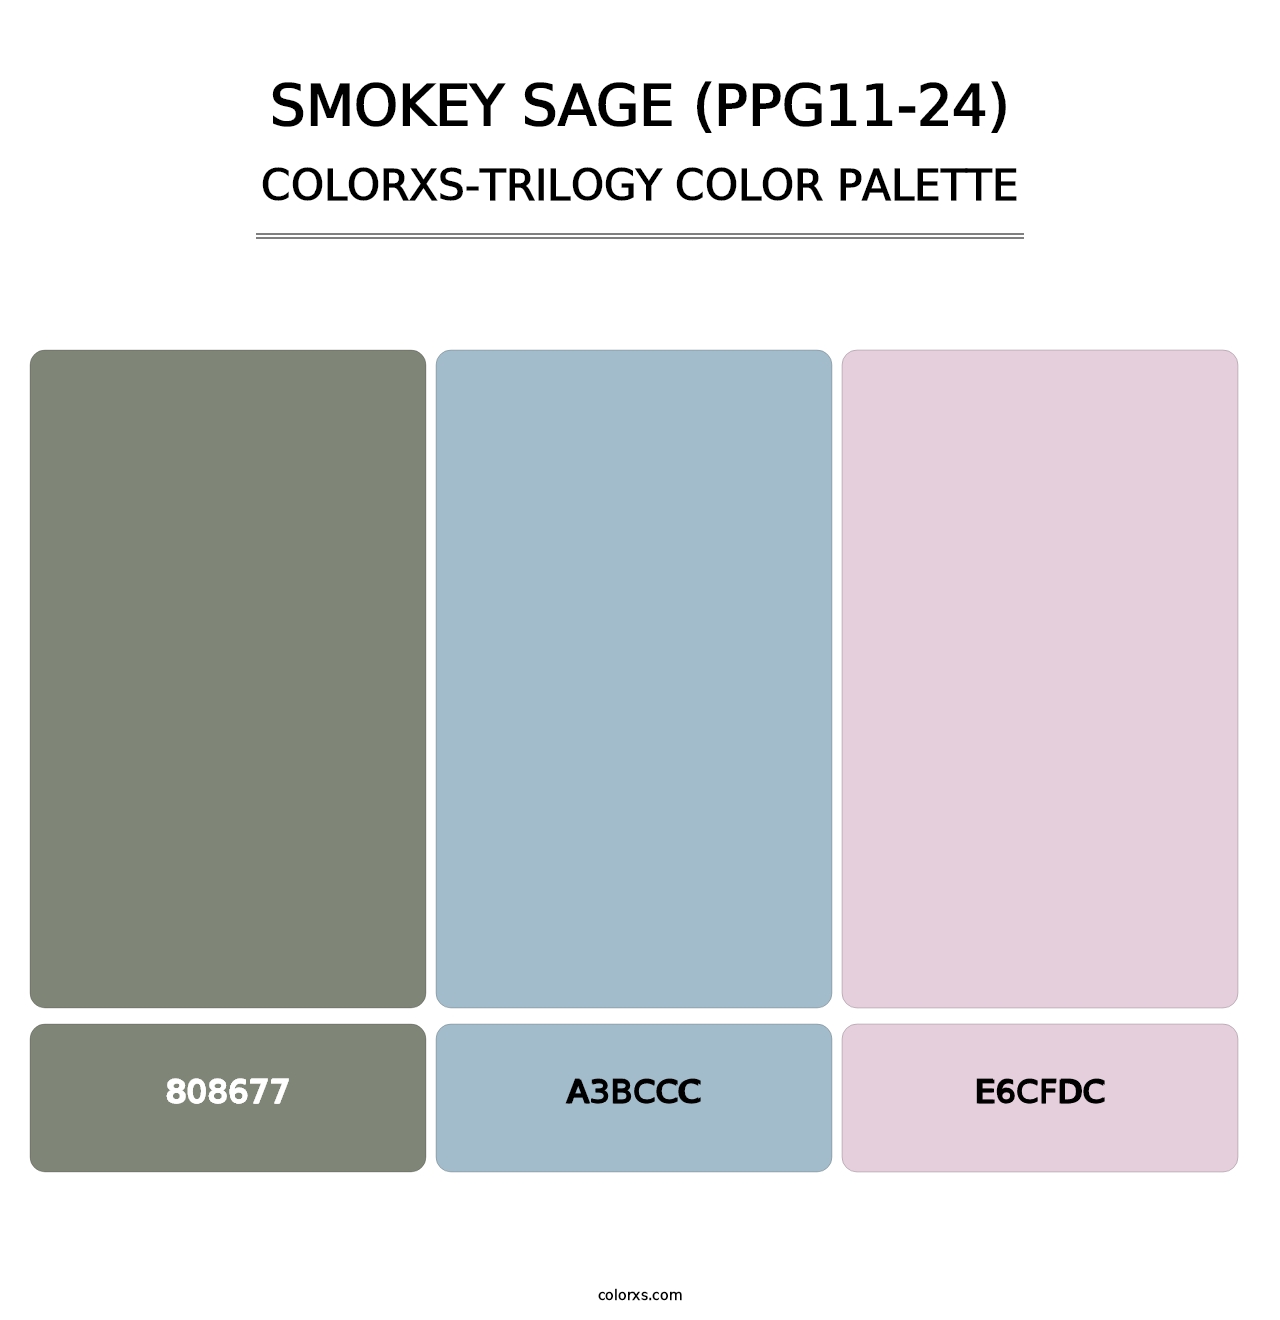 Smokey Sage (PPG11-24) - Colorxs Trilogy Palette